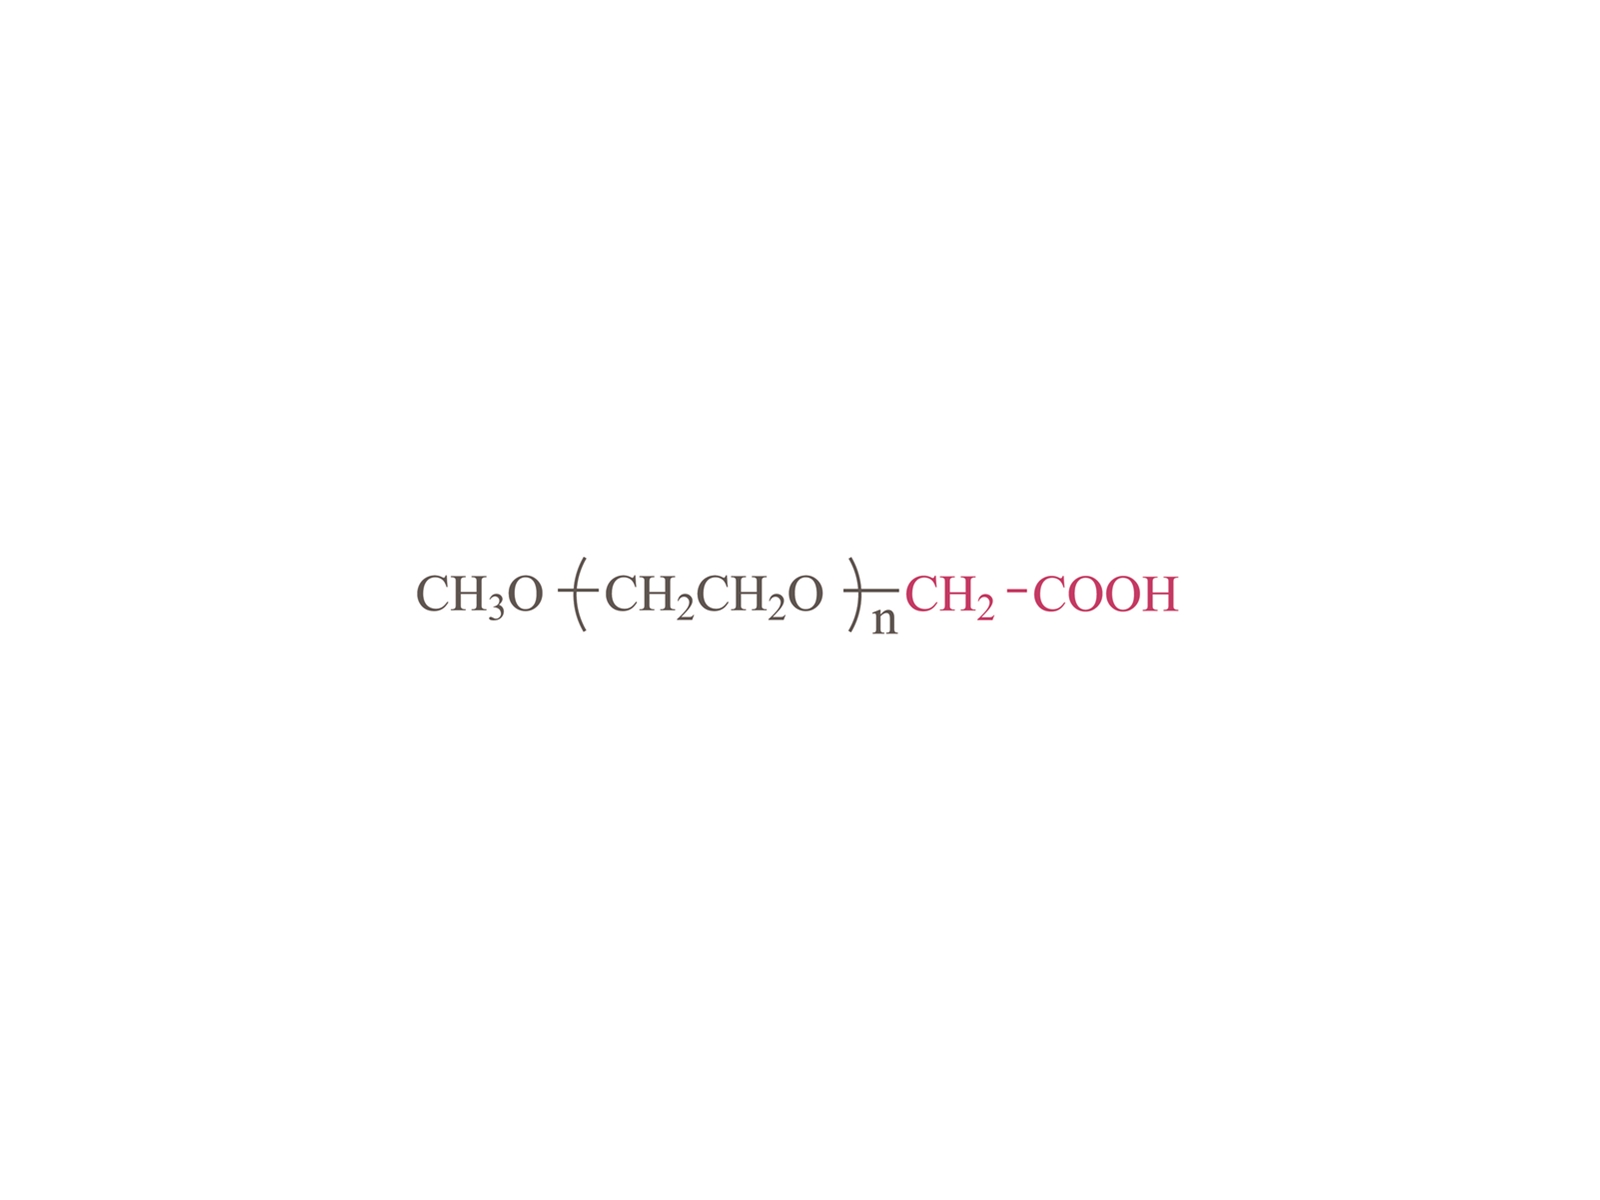 Methoxypoly (ethylene glycol) karboksimetil [MPEG-CM] CAS: 16024-60-5,16024-66-1.16142-03-3-3.75427-75-7.102013-72-9.908258-58-2